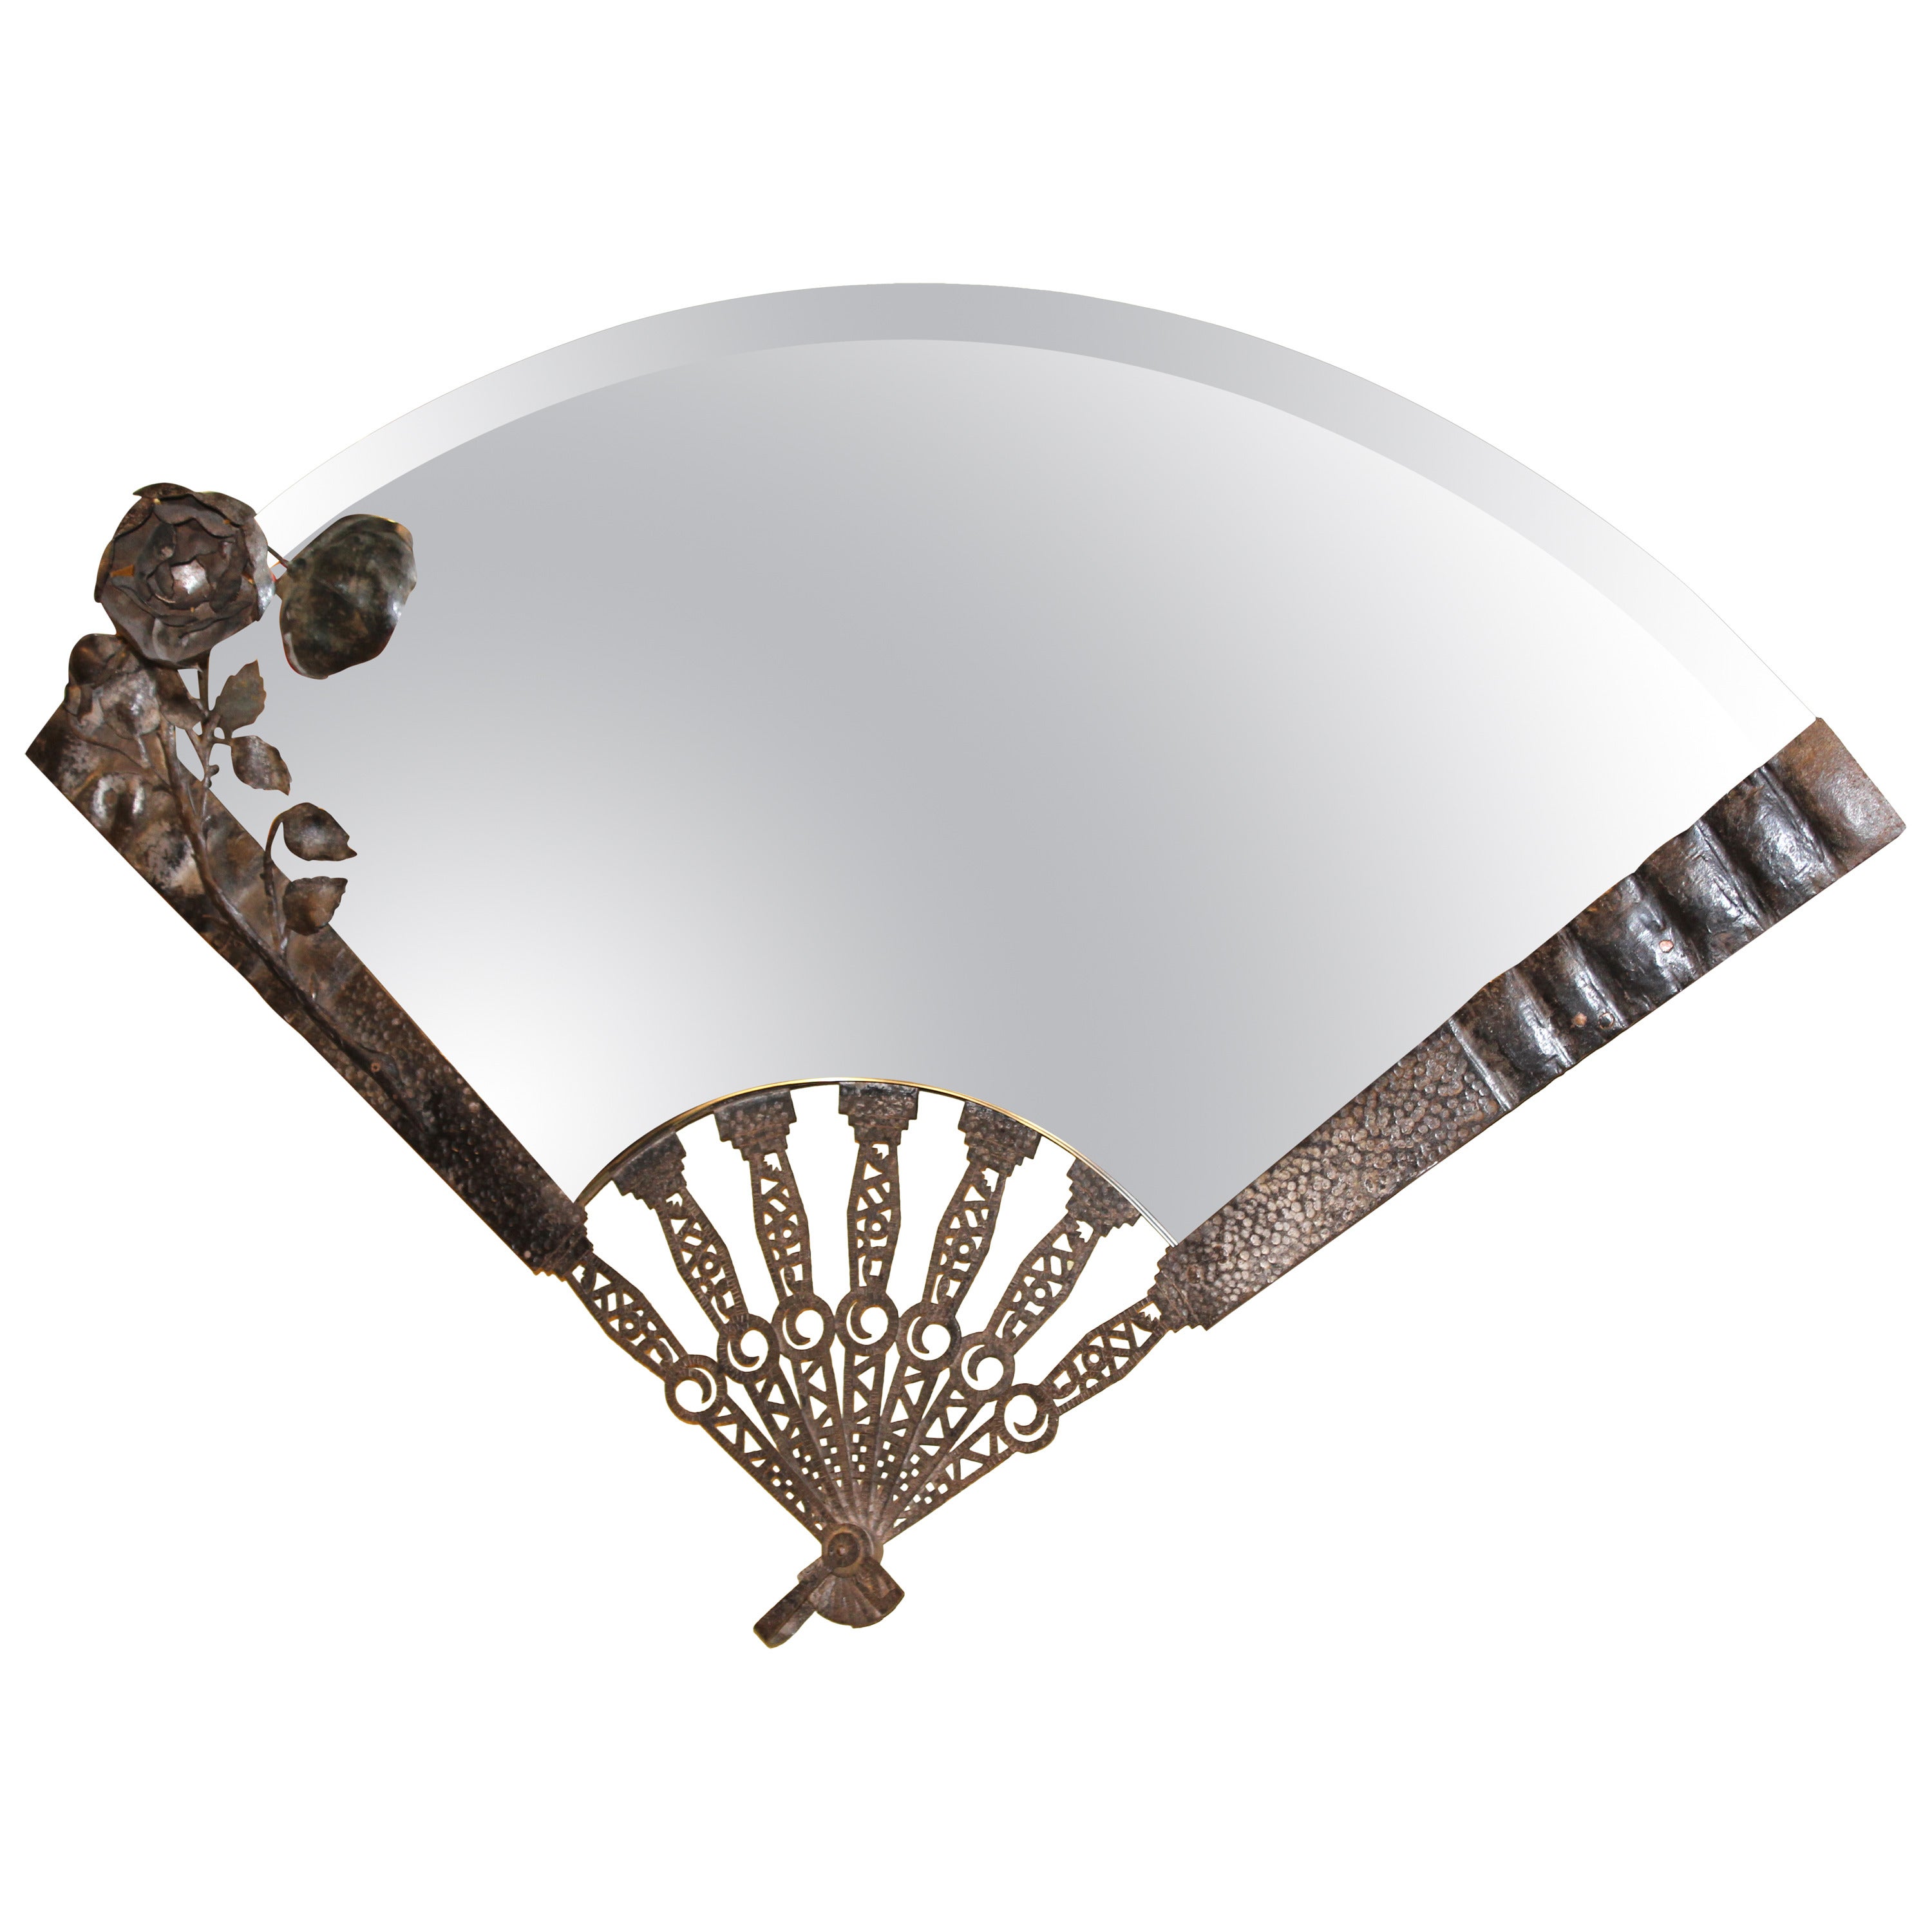 Metalwork Mirror in the Shape of a Folding Fan